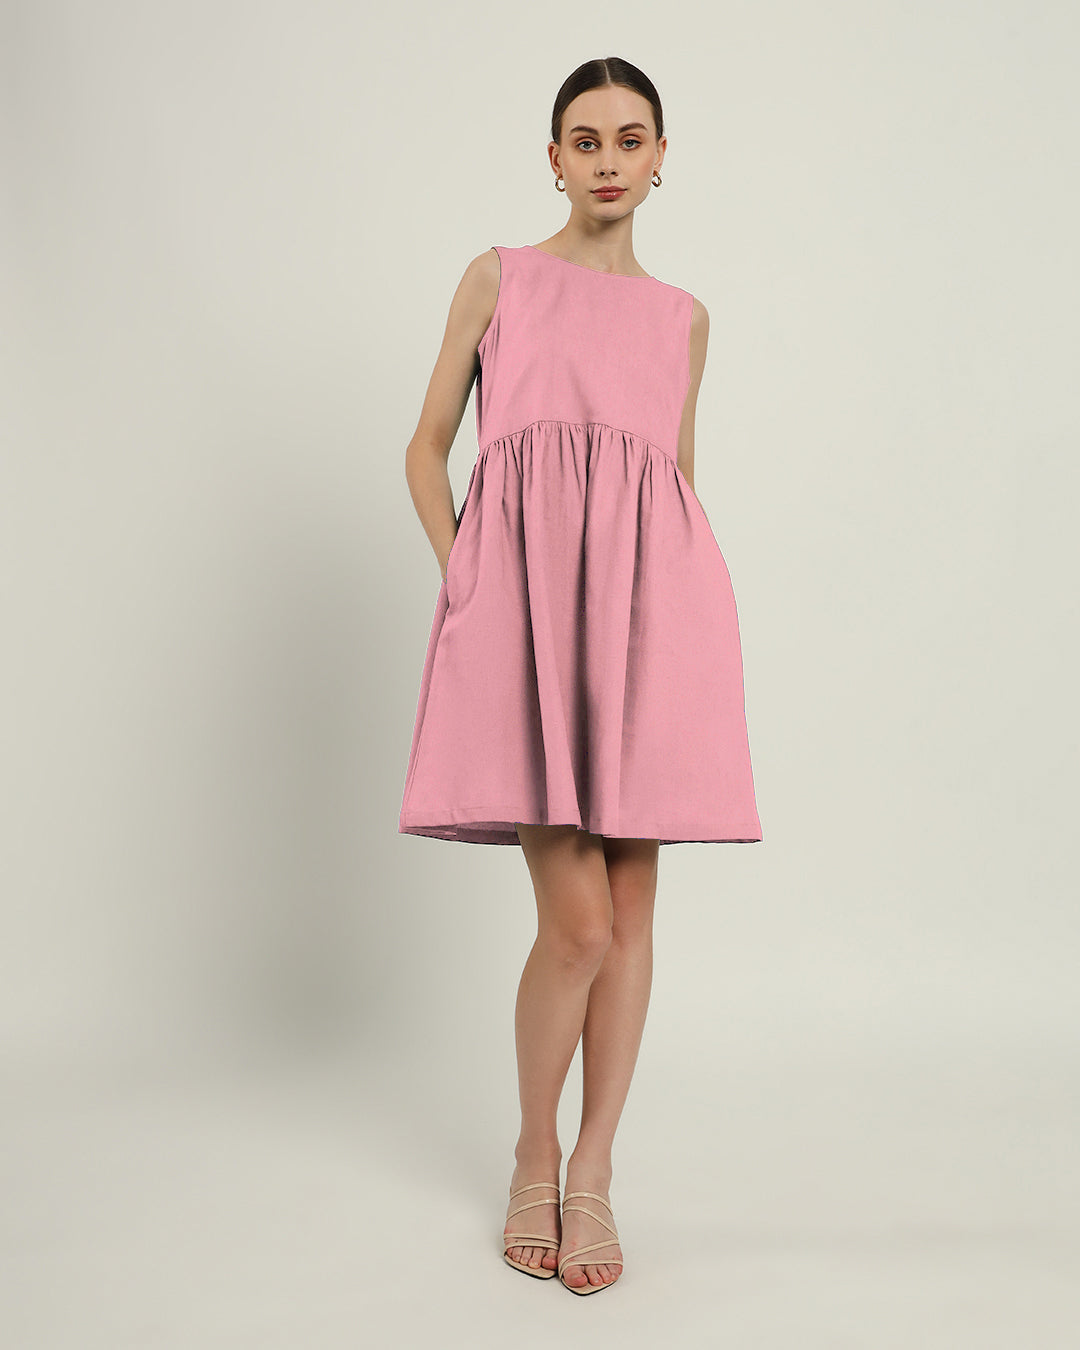 The Chania Fondant Pink Dress